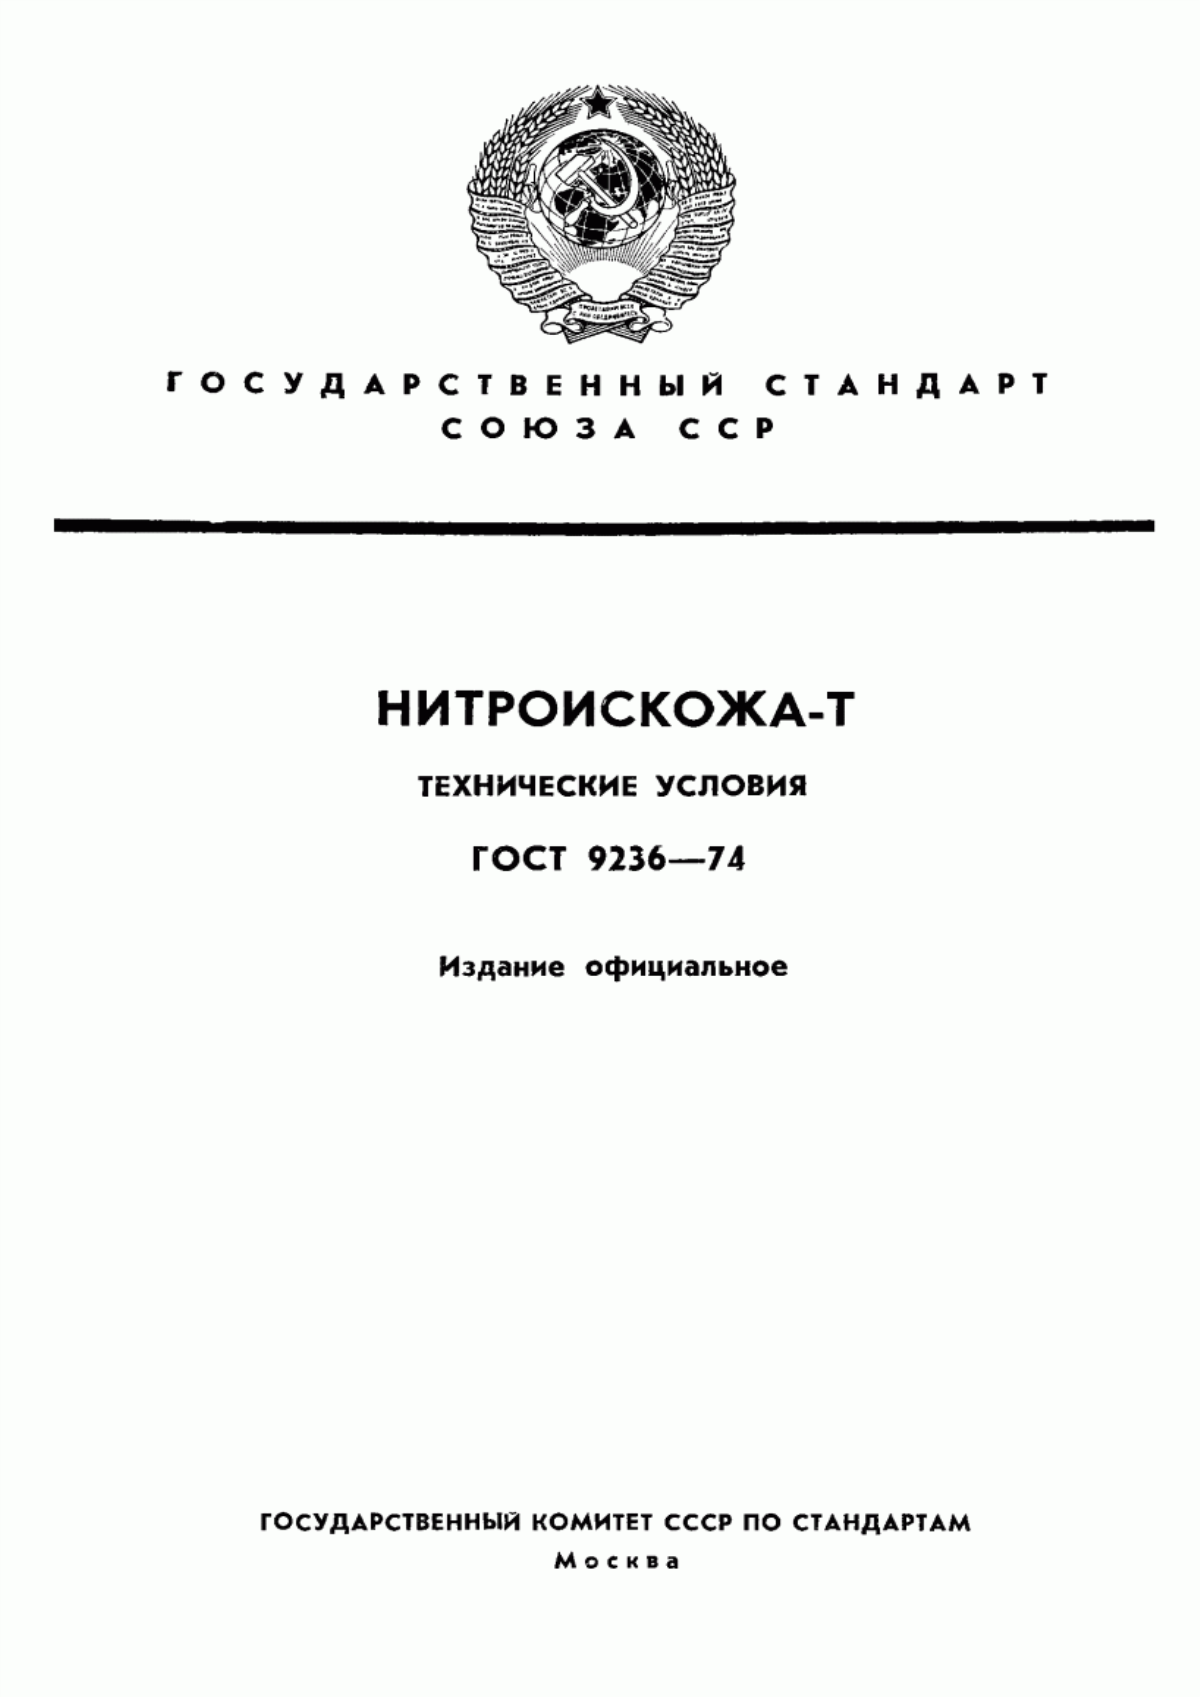 ГОСТ 9236-74 Нитроискожа-T. Технические условия